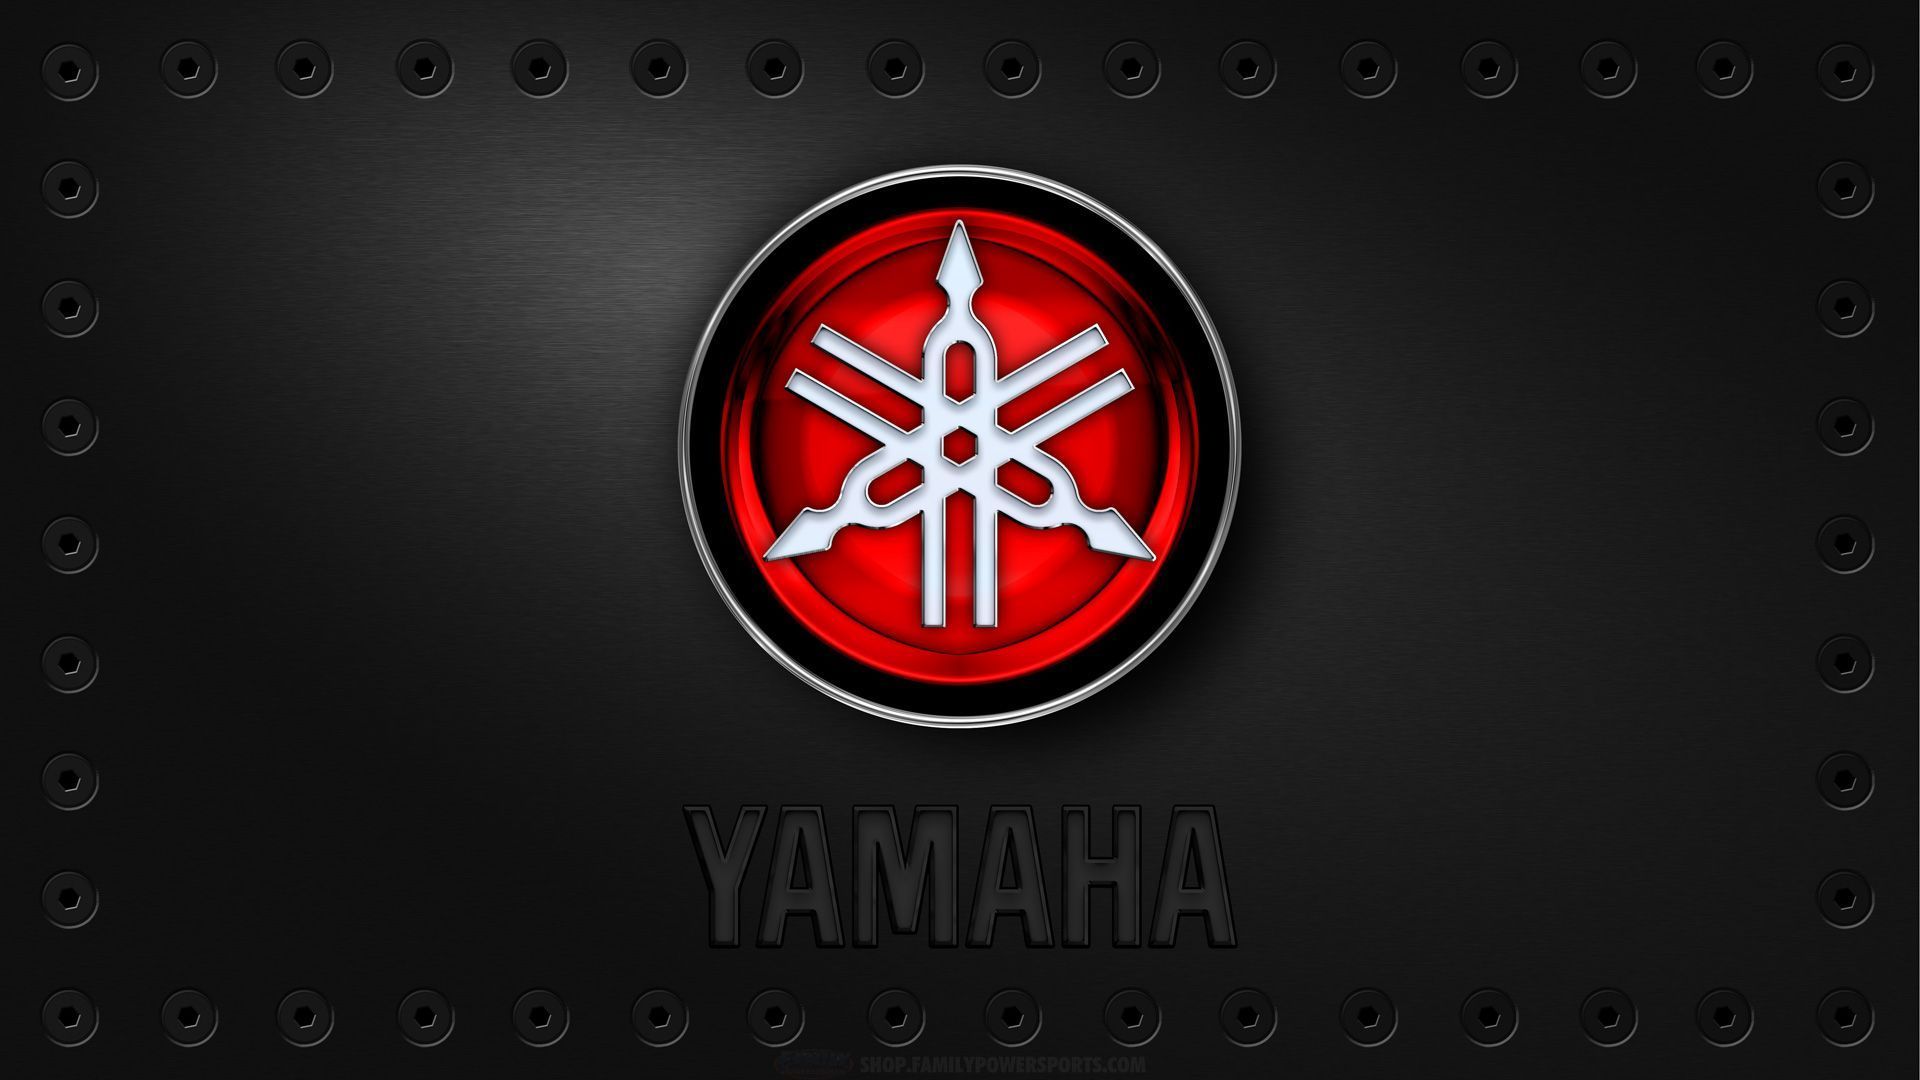 Yamaha Backrounds Wallpapers